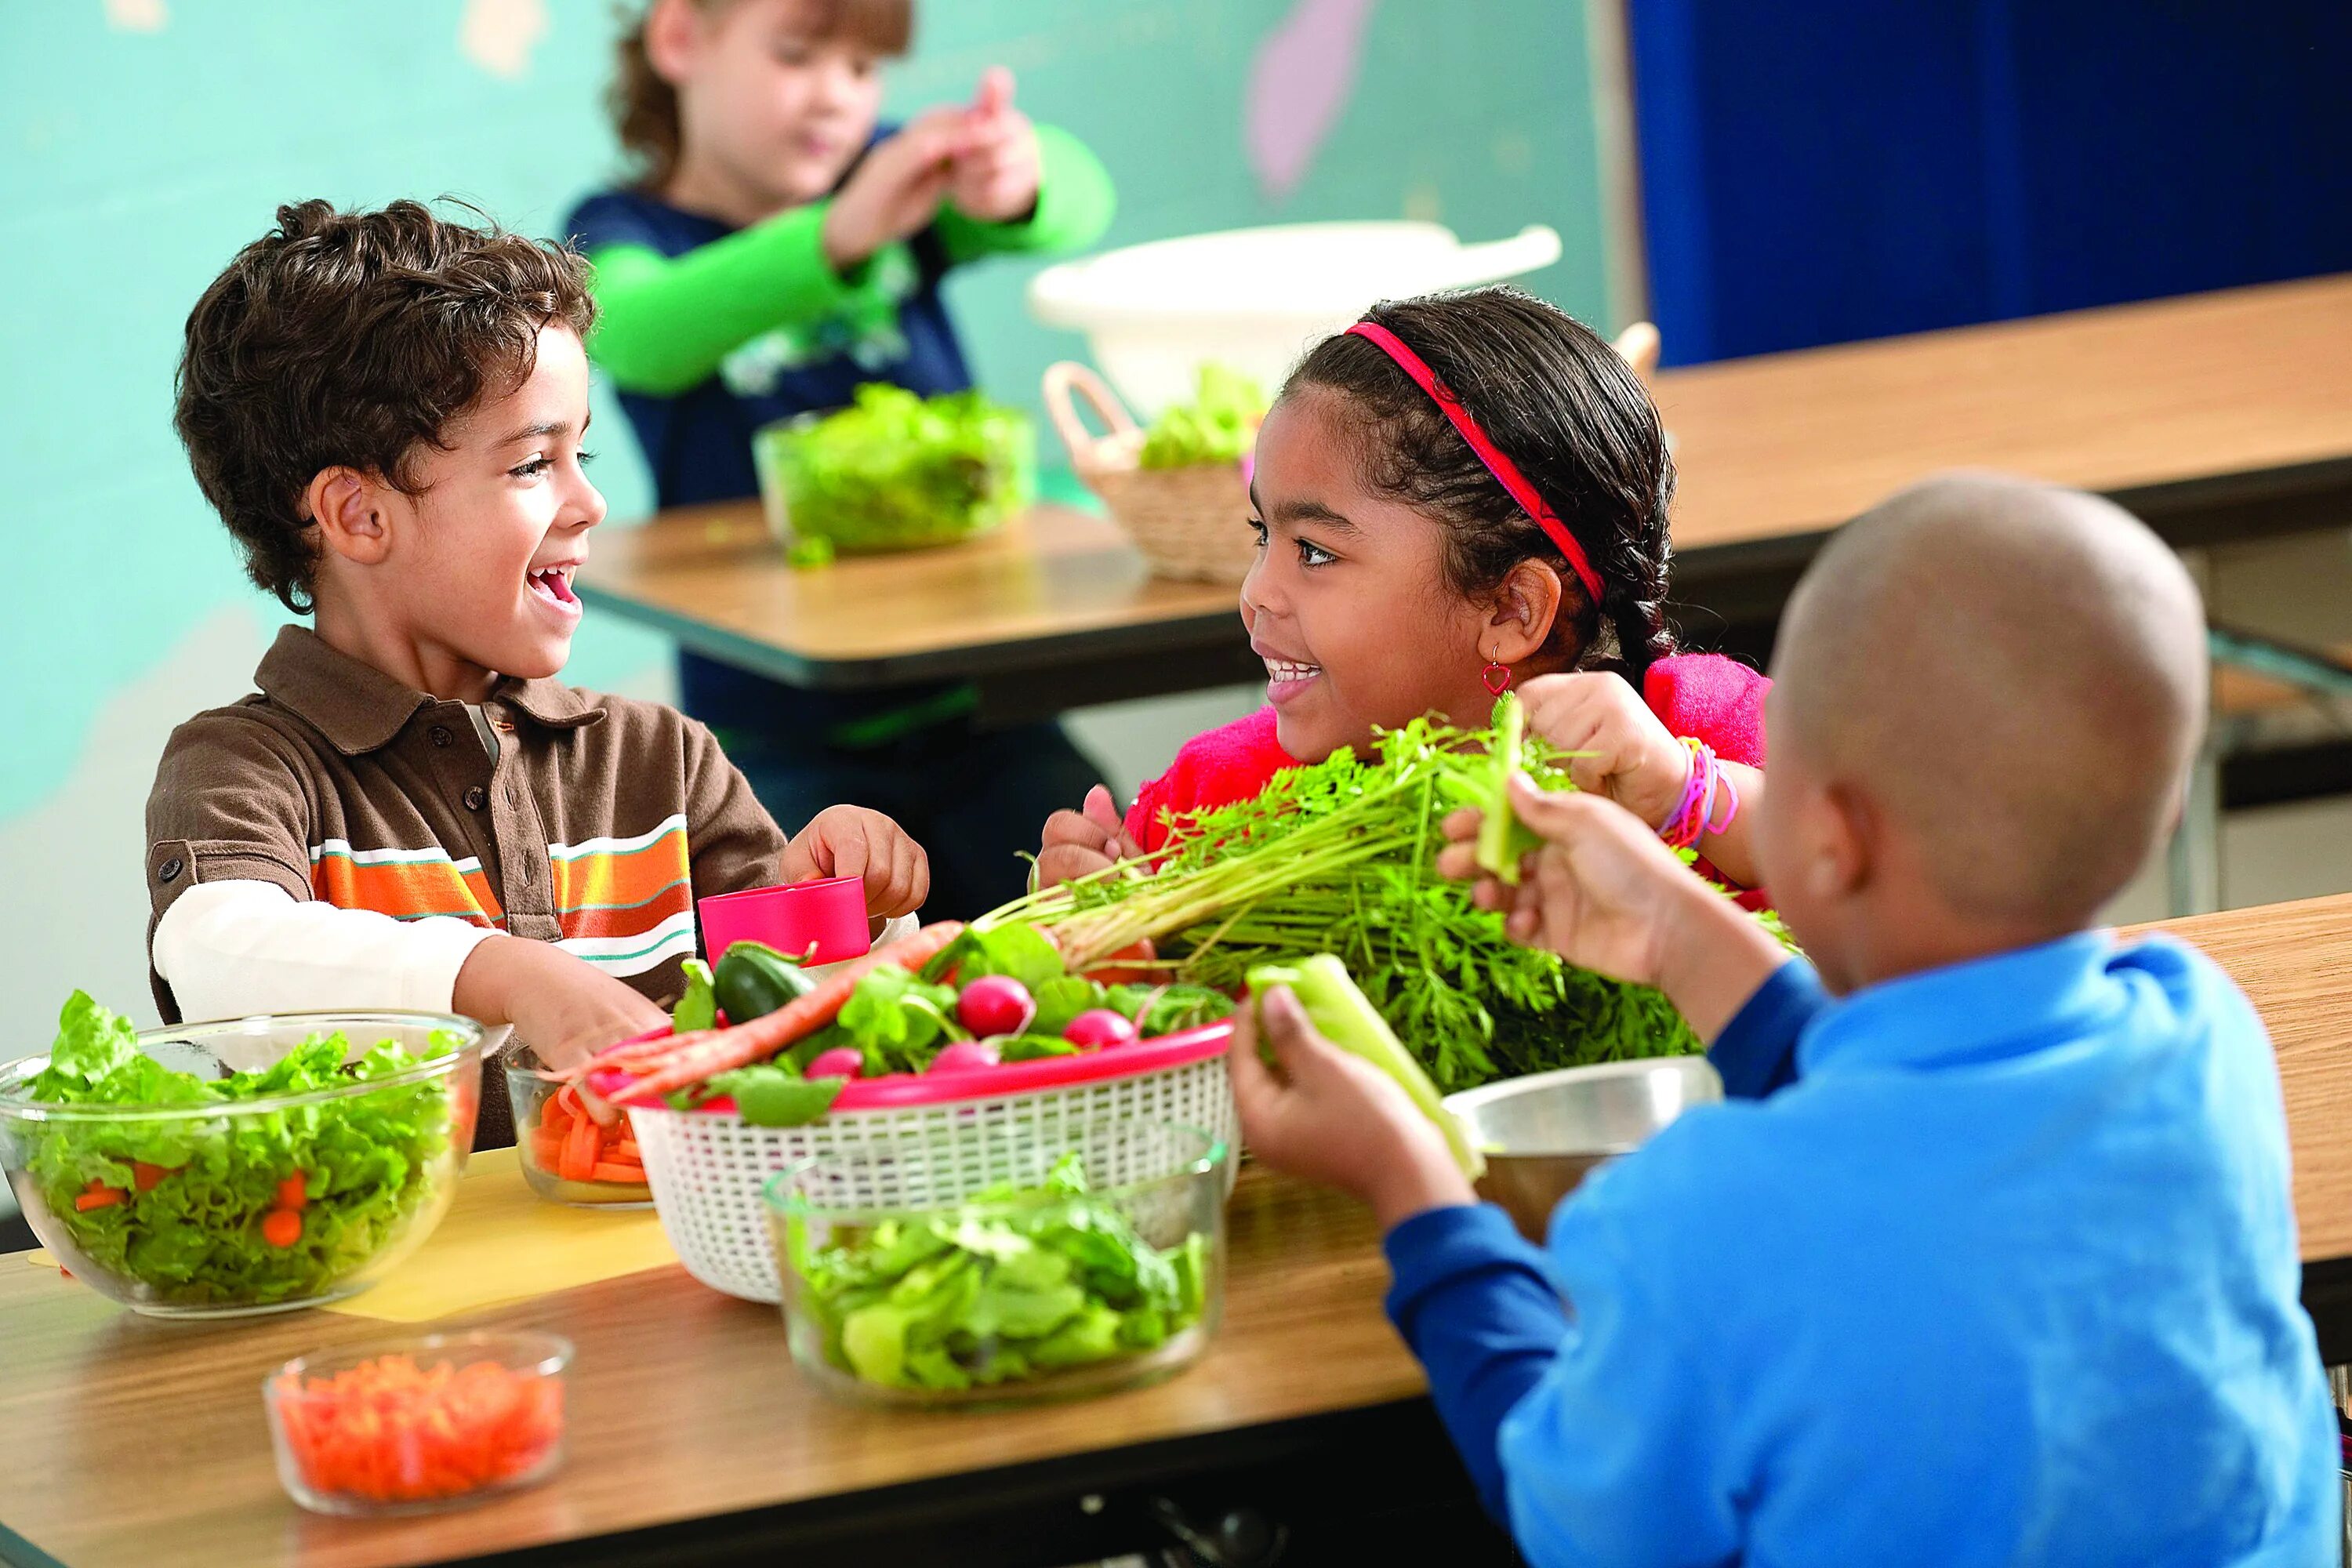 Vegetable family. Питание детей. Овощи для детей. Еда для детей. Здоровый ребенок.